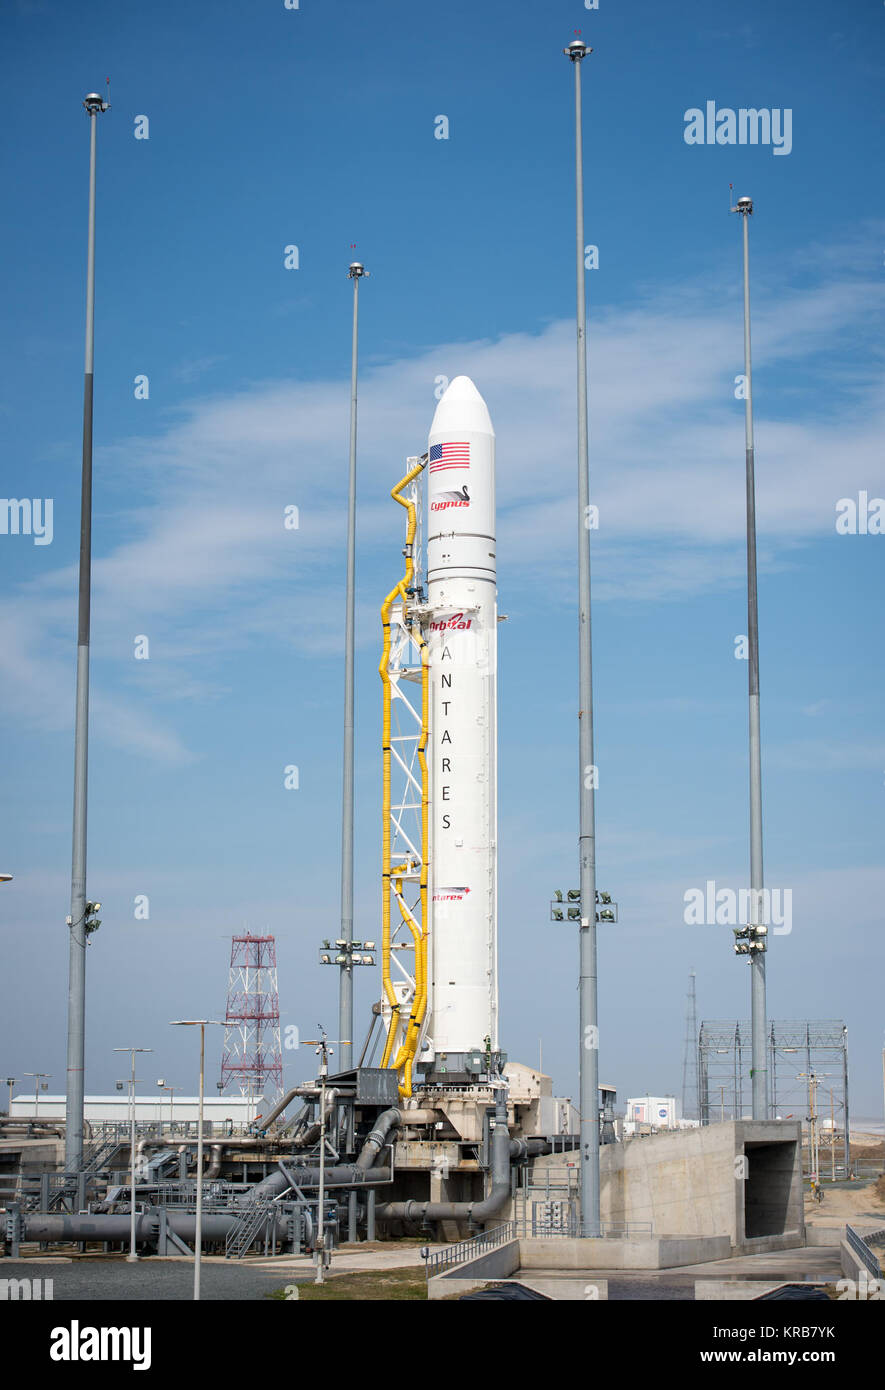 La Orbital Sciences Corporation Antares cohete es visto en el Mid-Atlantic Regional Spaceport (MARS) Pad-0A en las Instalaciones de Vuelo Wallops de la NASA, el viernes, 19 de abril de 2013 en Virginia. Socio comercial espacial de la NASA, Orbital Sciences Corporation, está programado para lanzar su primera prueba Antares el sábado, 20 de abril de 2013. Crédito de la foto: (NASA/Bill Ingalls) Antares a-uno vertical - Abril 20.1 Foto de stock